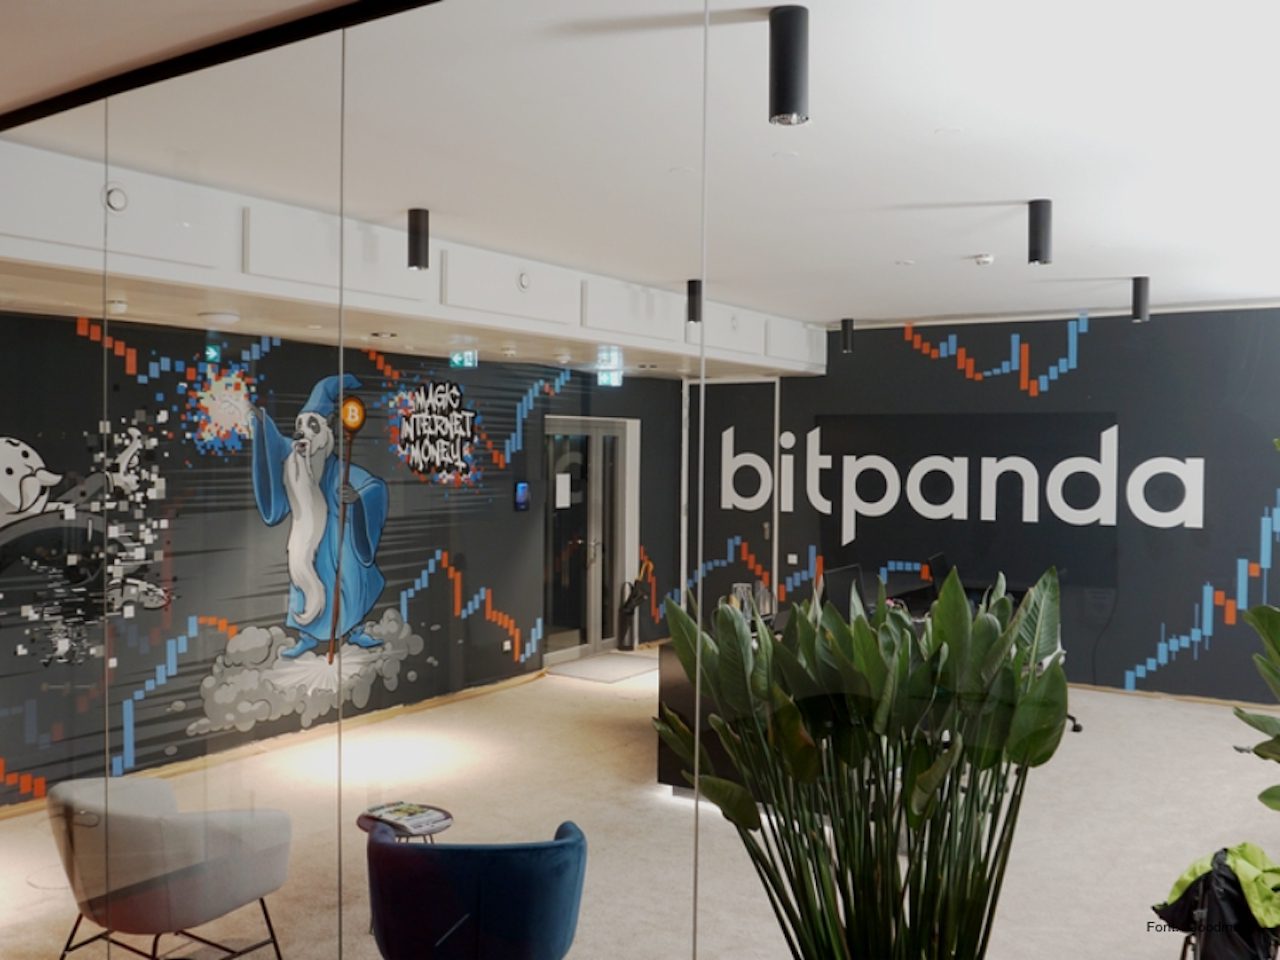 التوأم الشرير لـبيتباندا Bitpanda كيف تقوض النسخ المستنسخة الثقة في بورصات العملات المشفرة